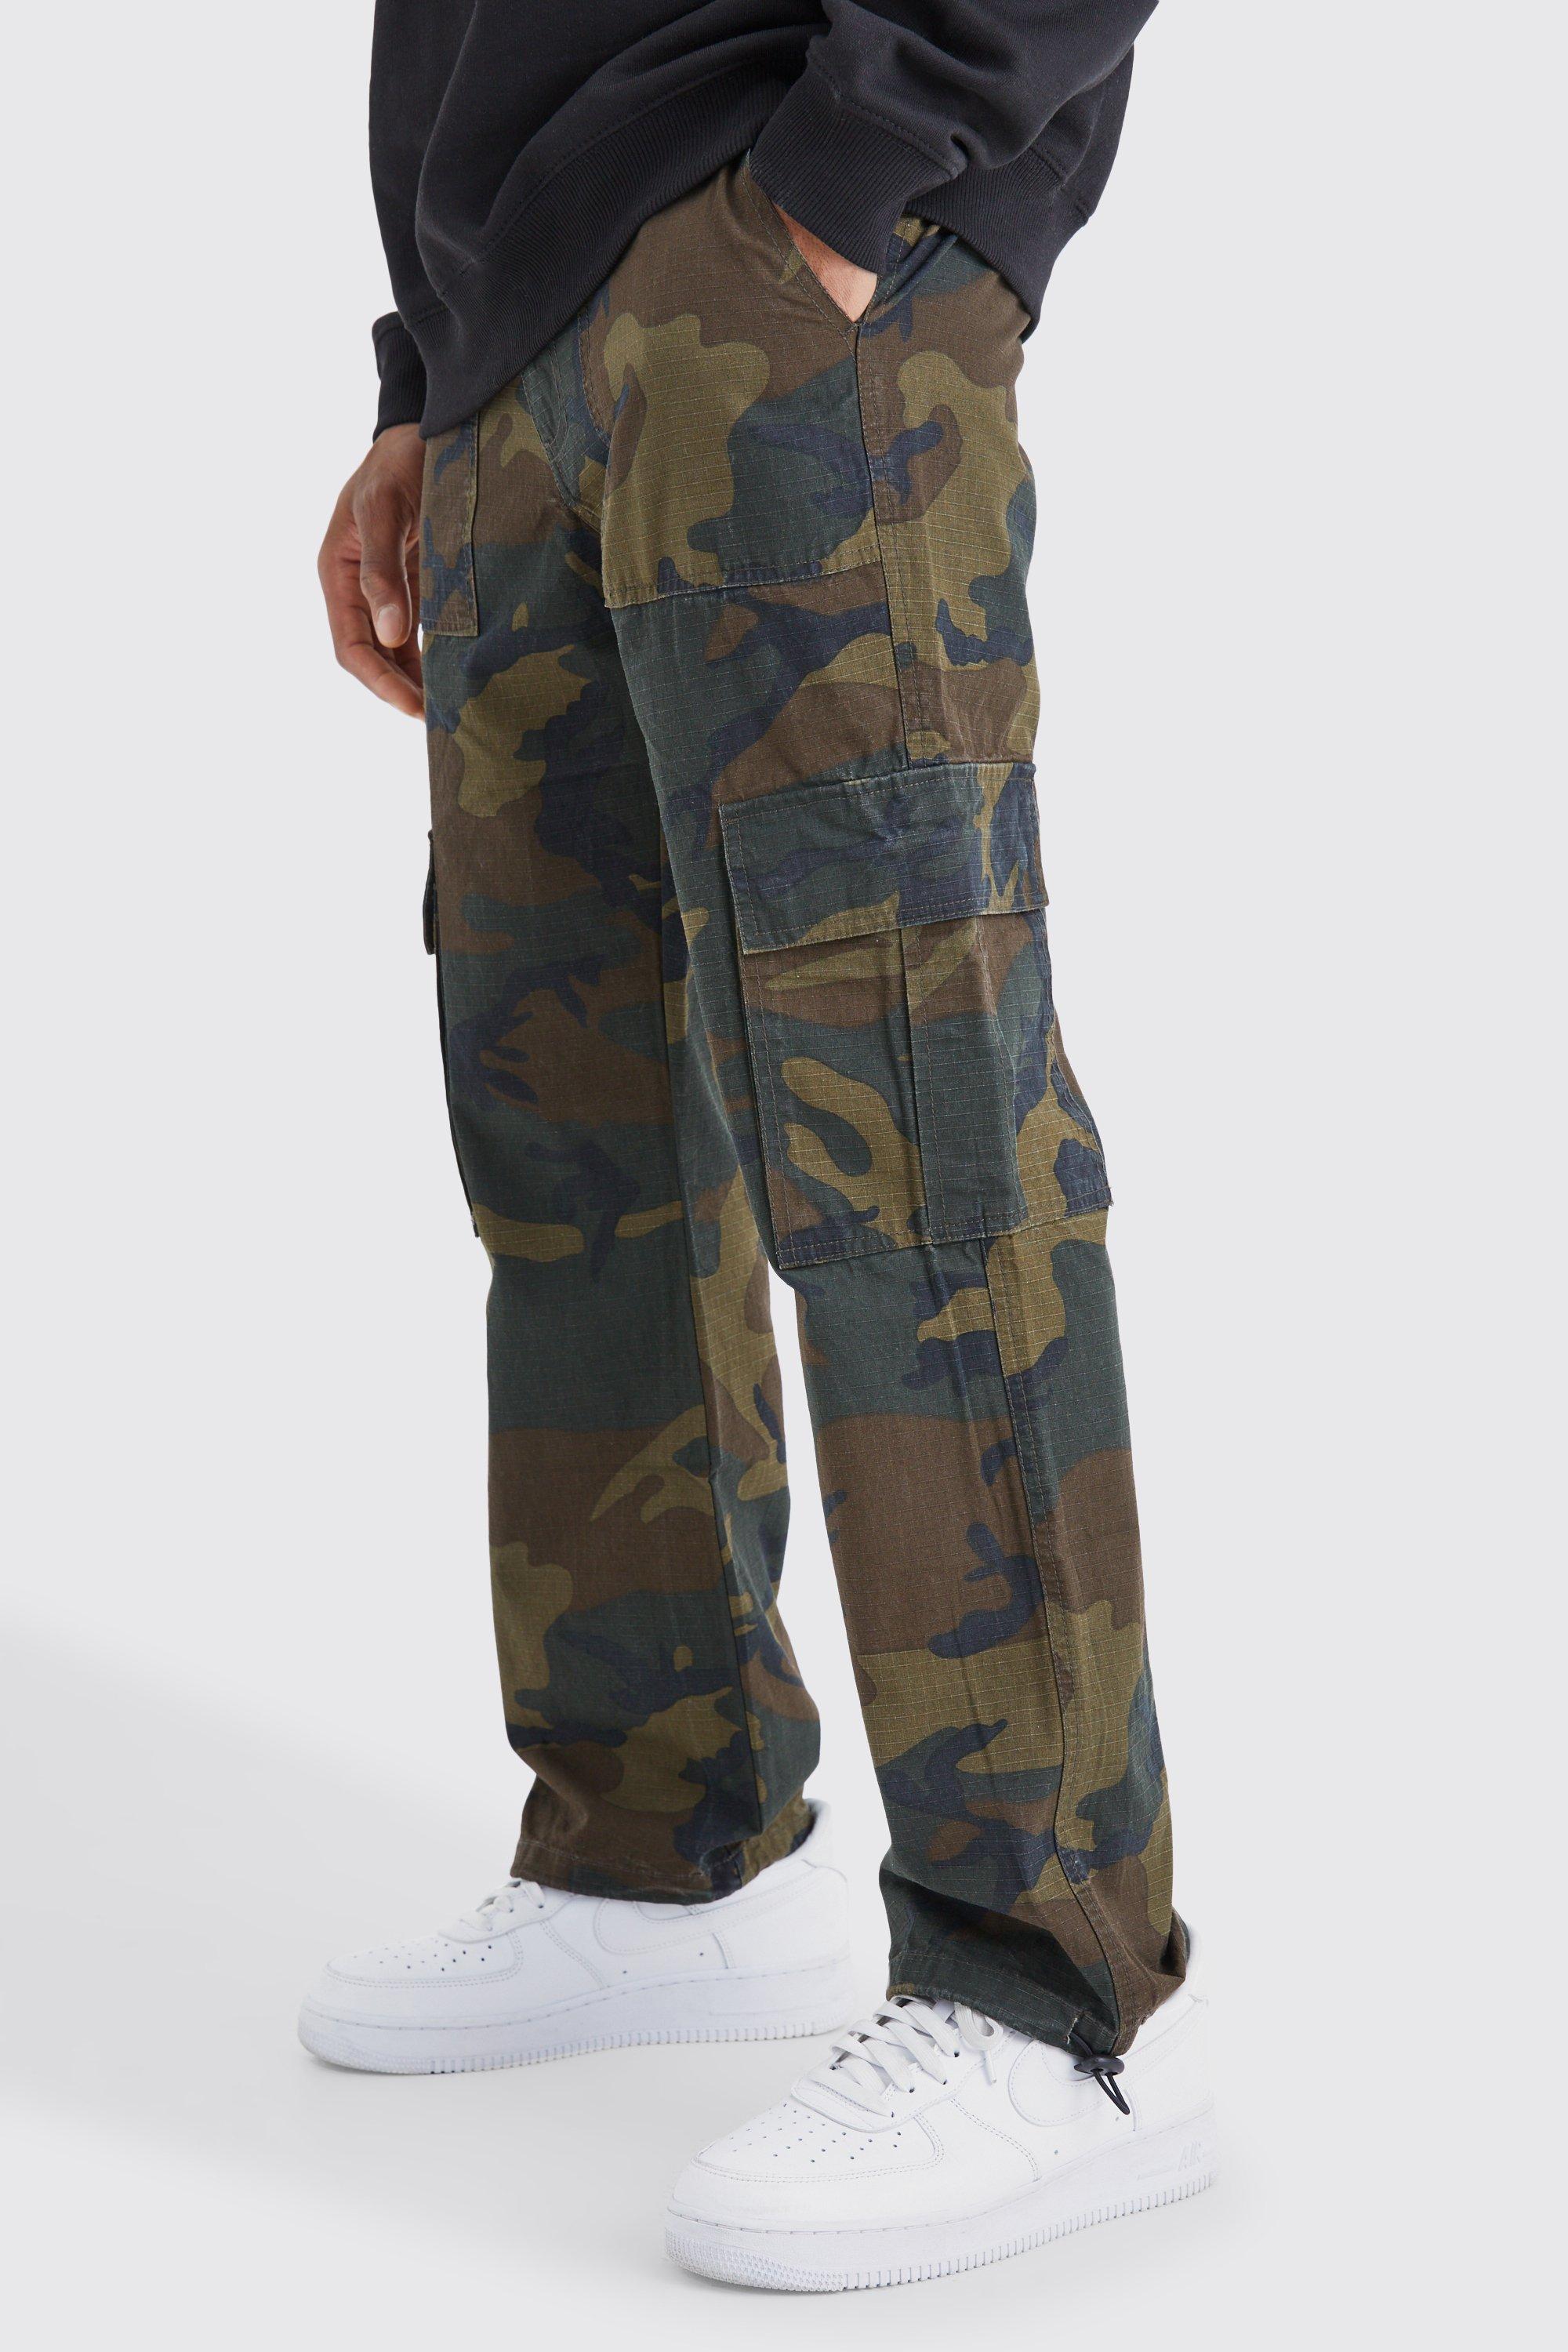 pantalon droit à imprimé camouflage homme - kaki - 28, kaki